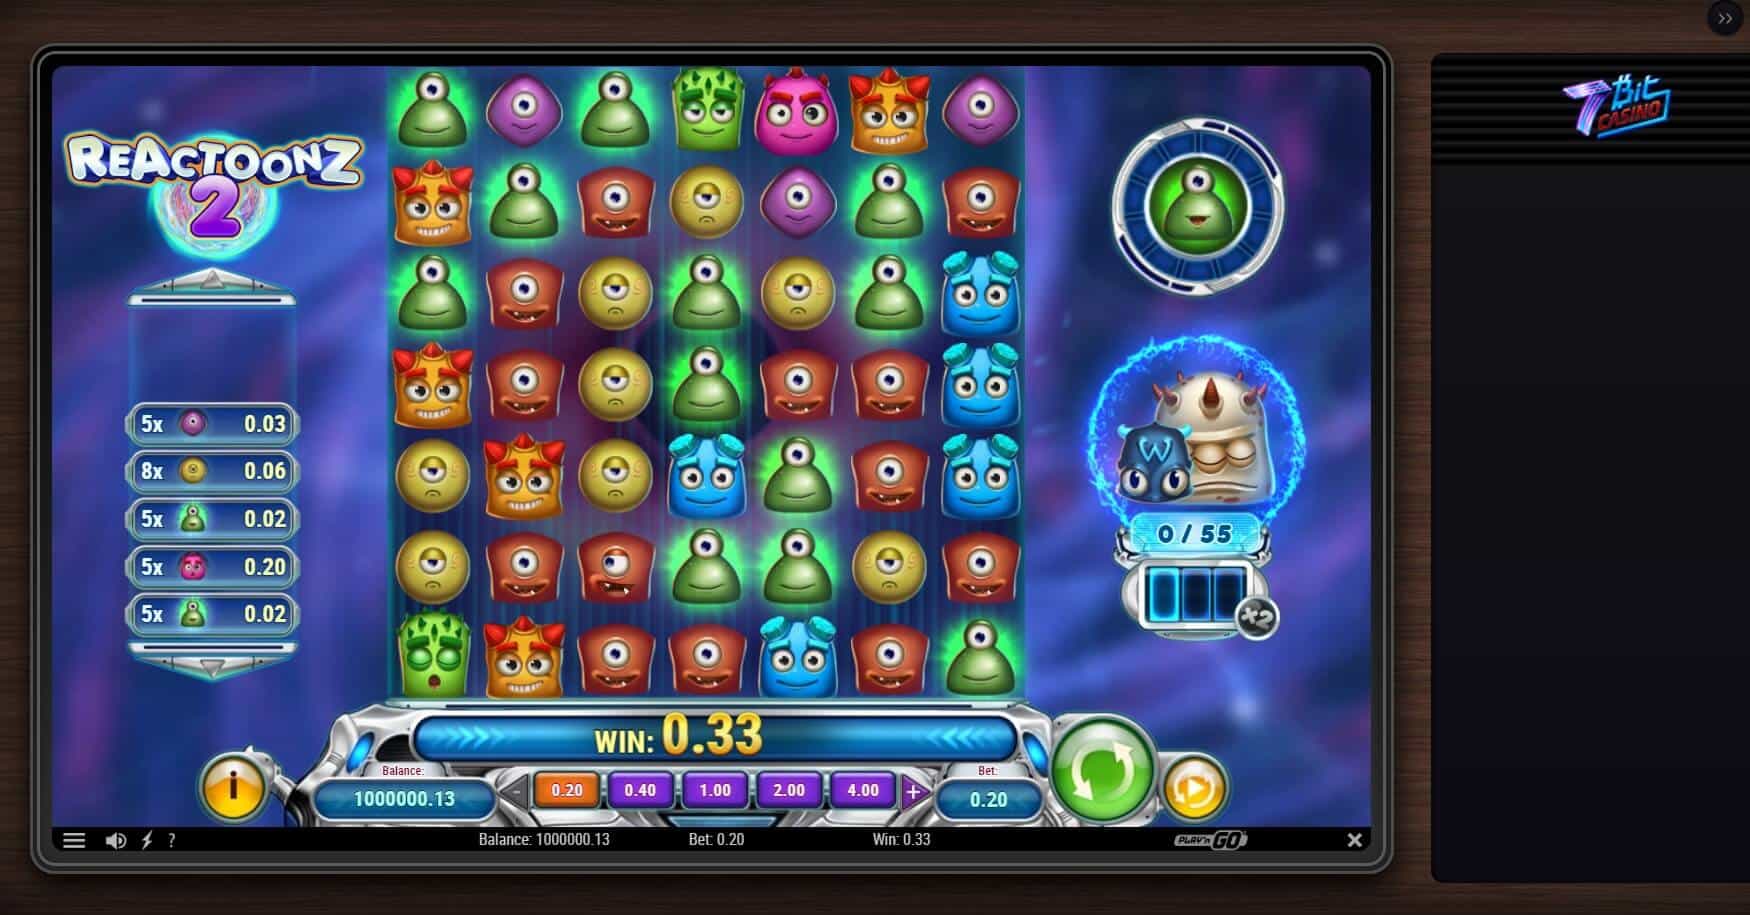 7bit Casino slot game